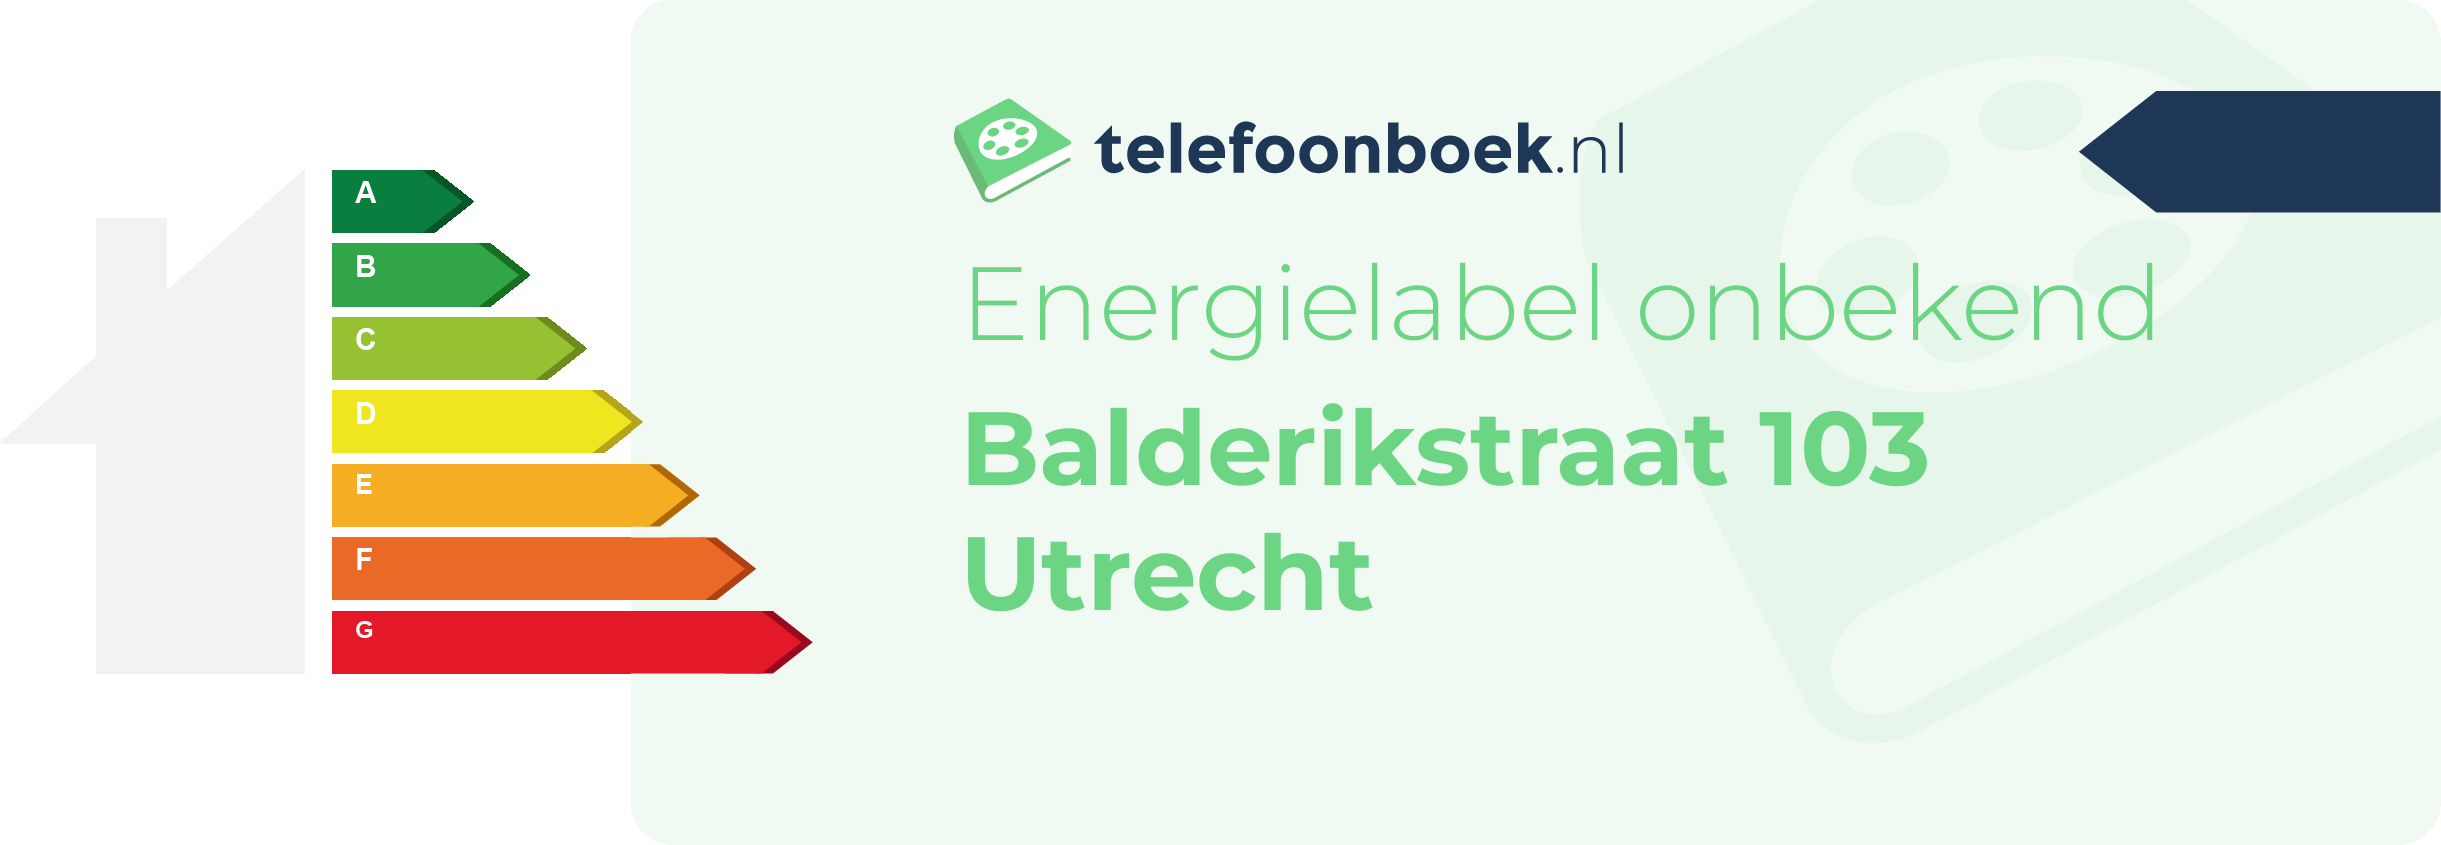 Energielabel Balderikstraat 103 Utrecht